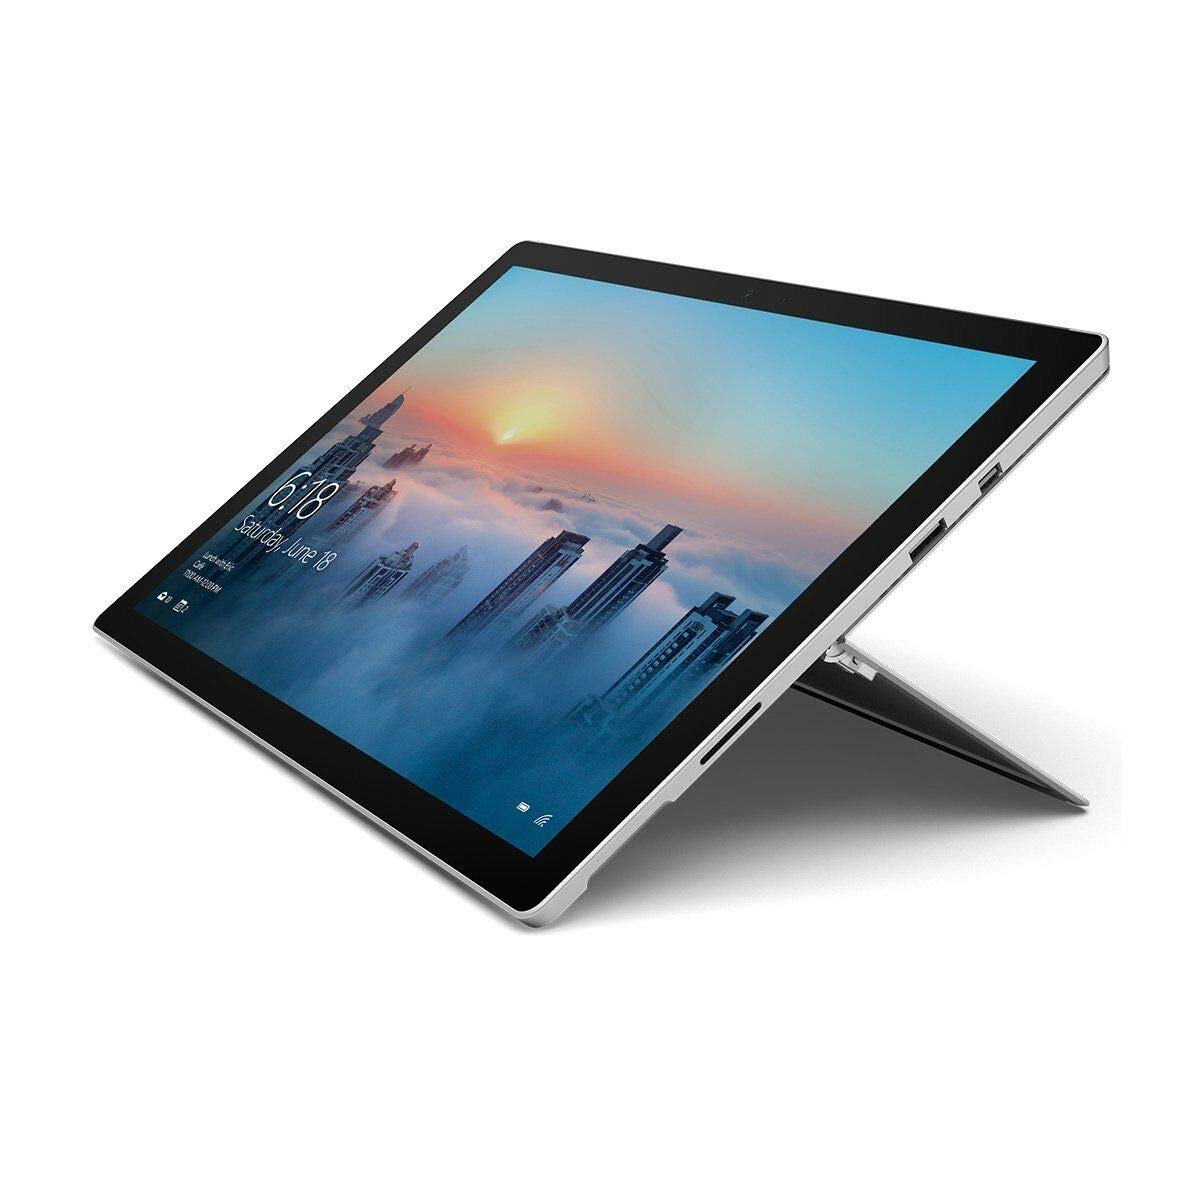 Microsoft Surface Pro 4; 256 GB, 8 GB RAM, Intel Core i5 (Renewed)